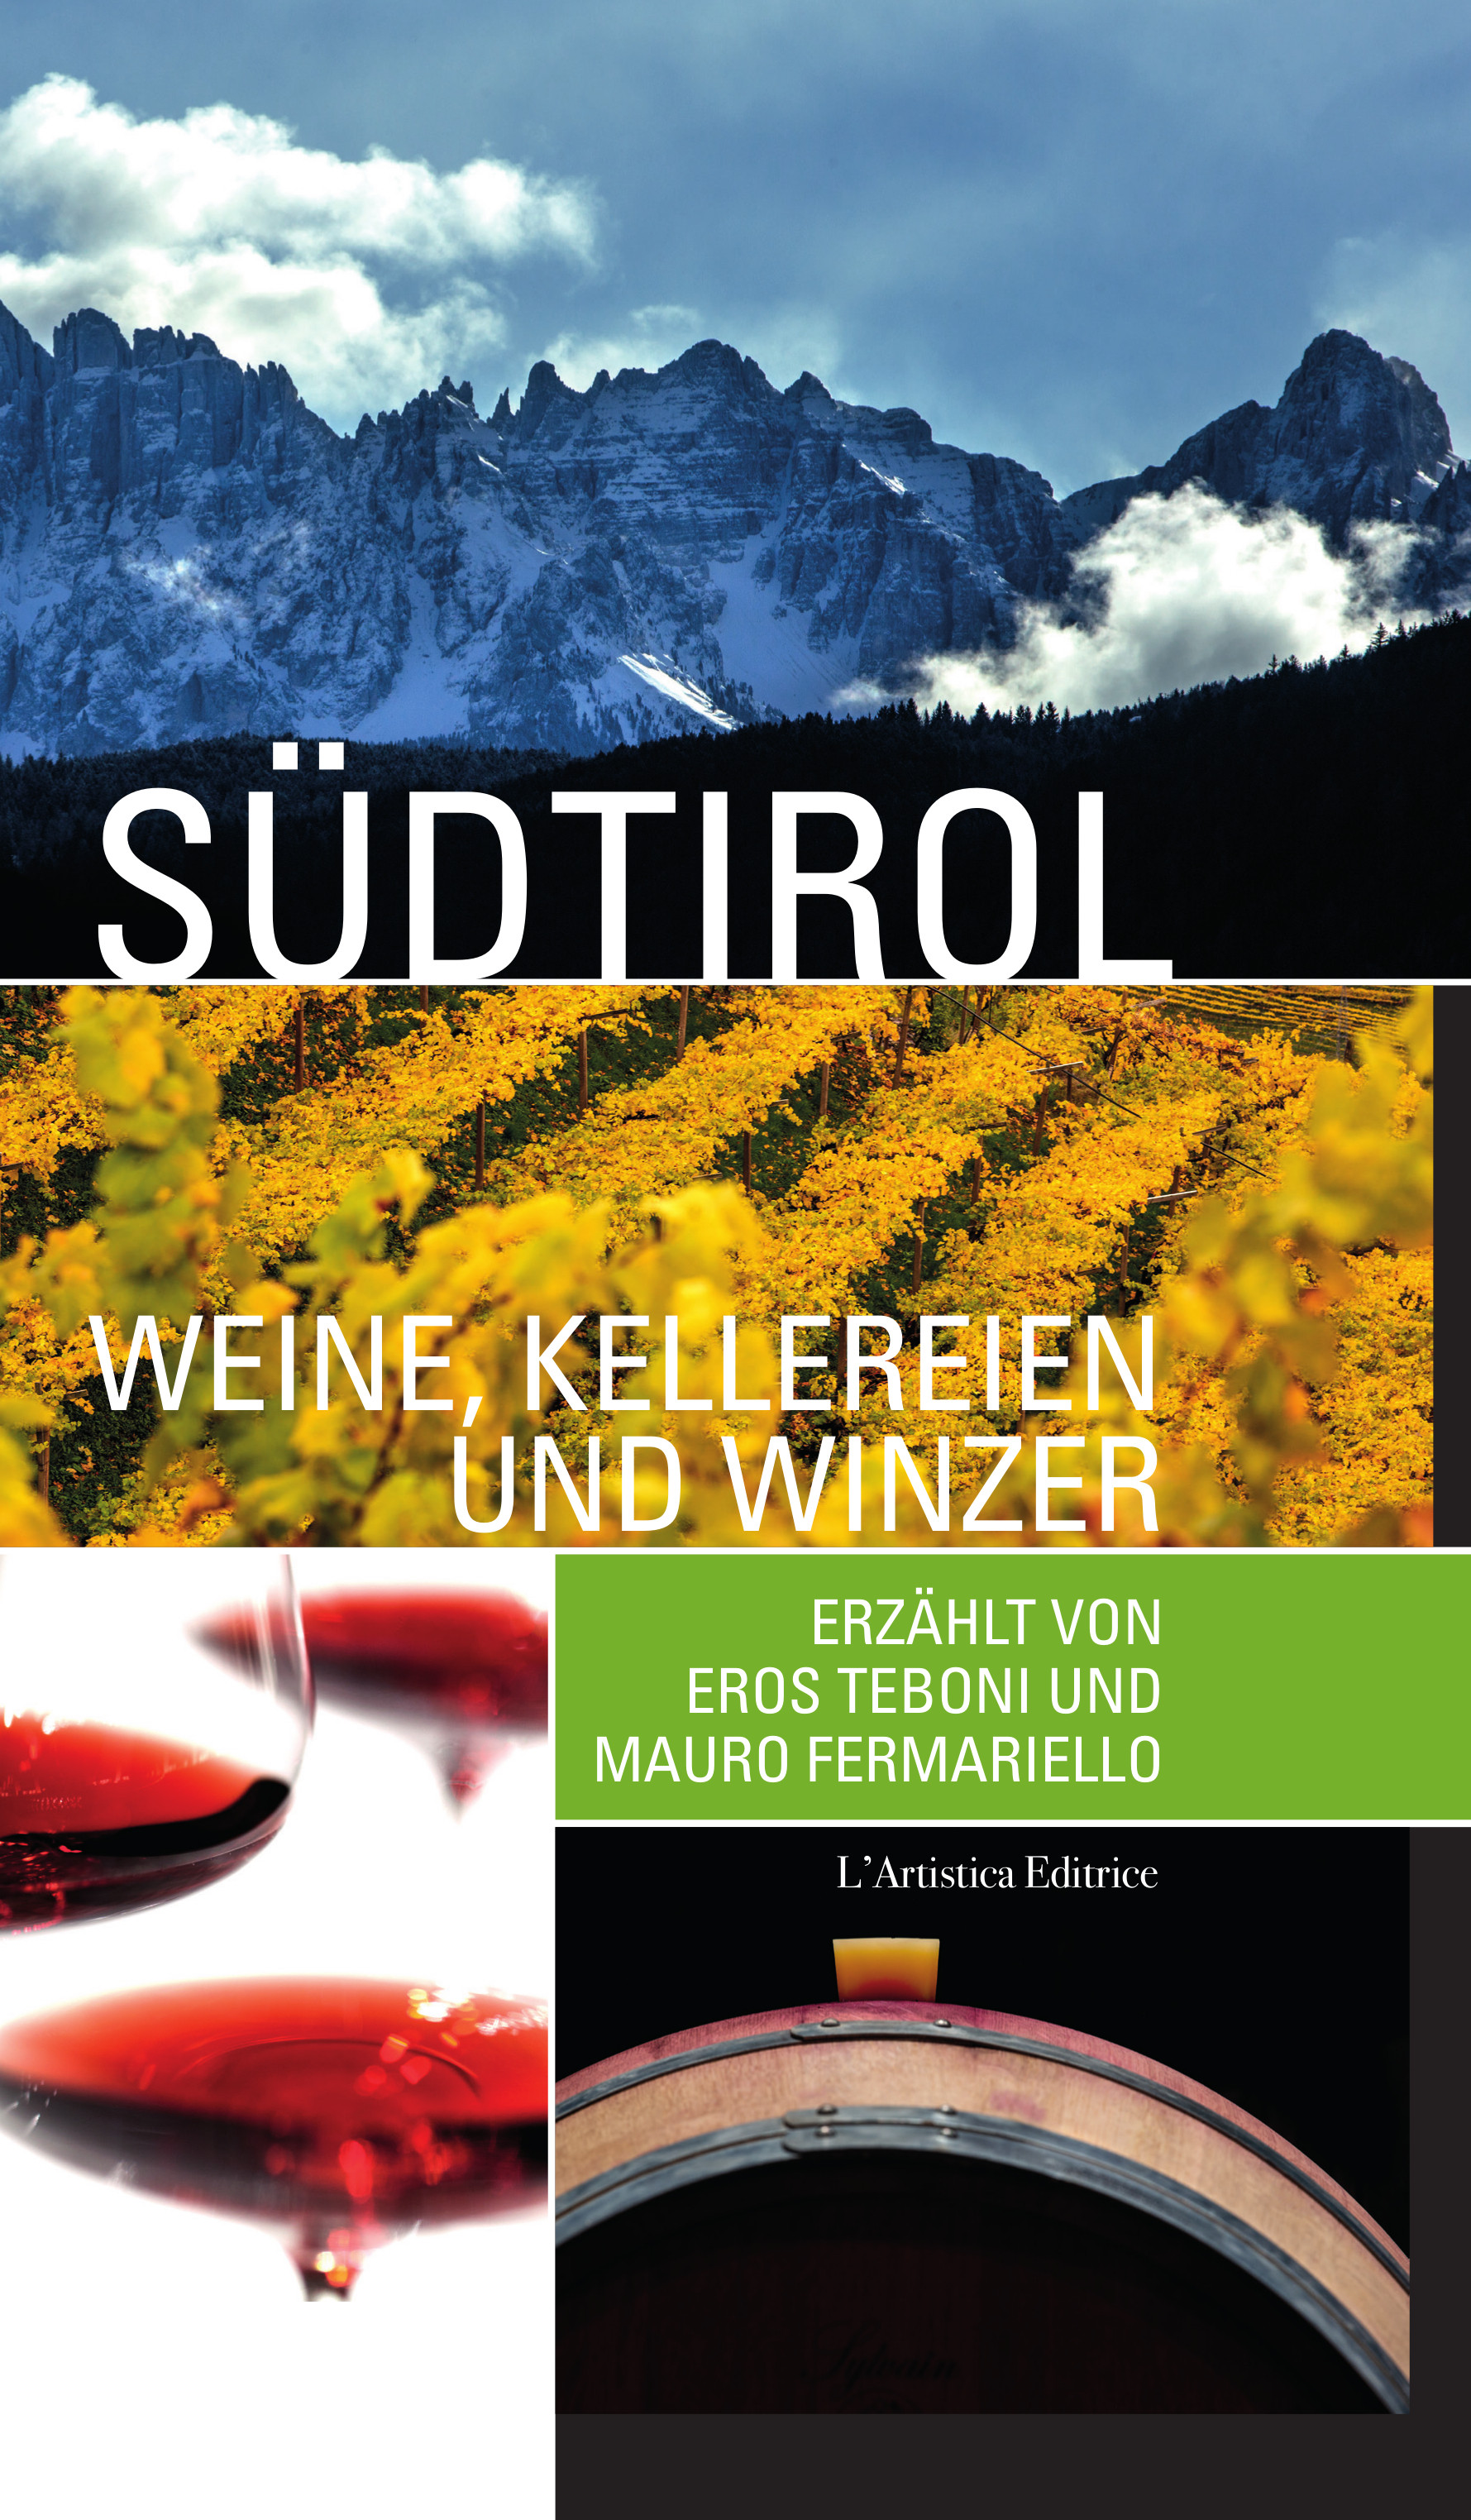 Südtirol – Weine, Kellereien und winzer